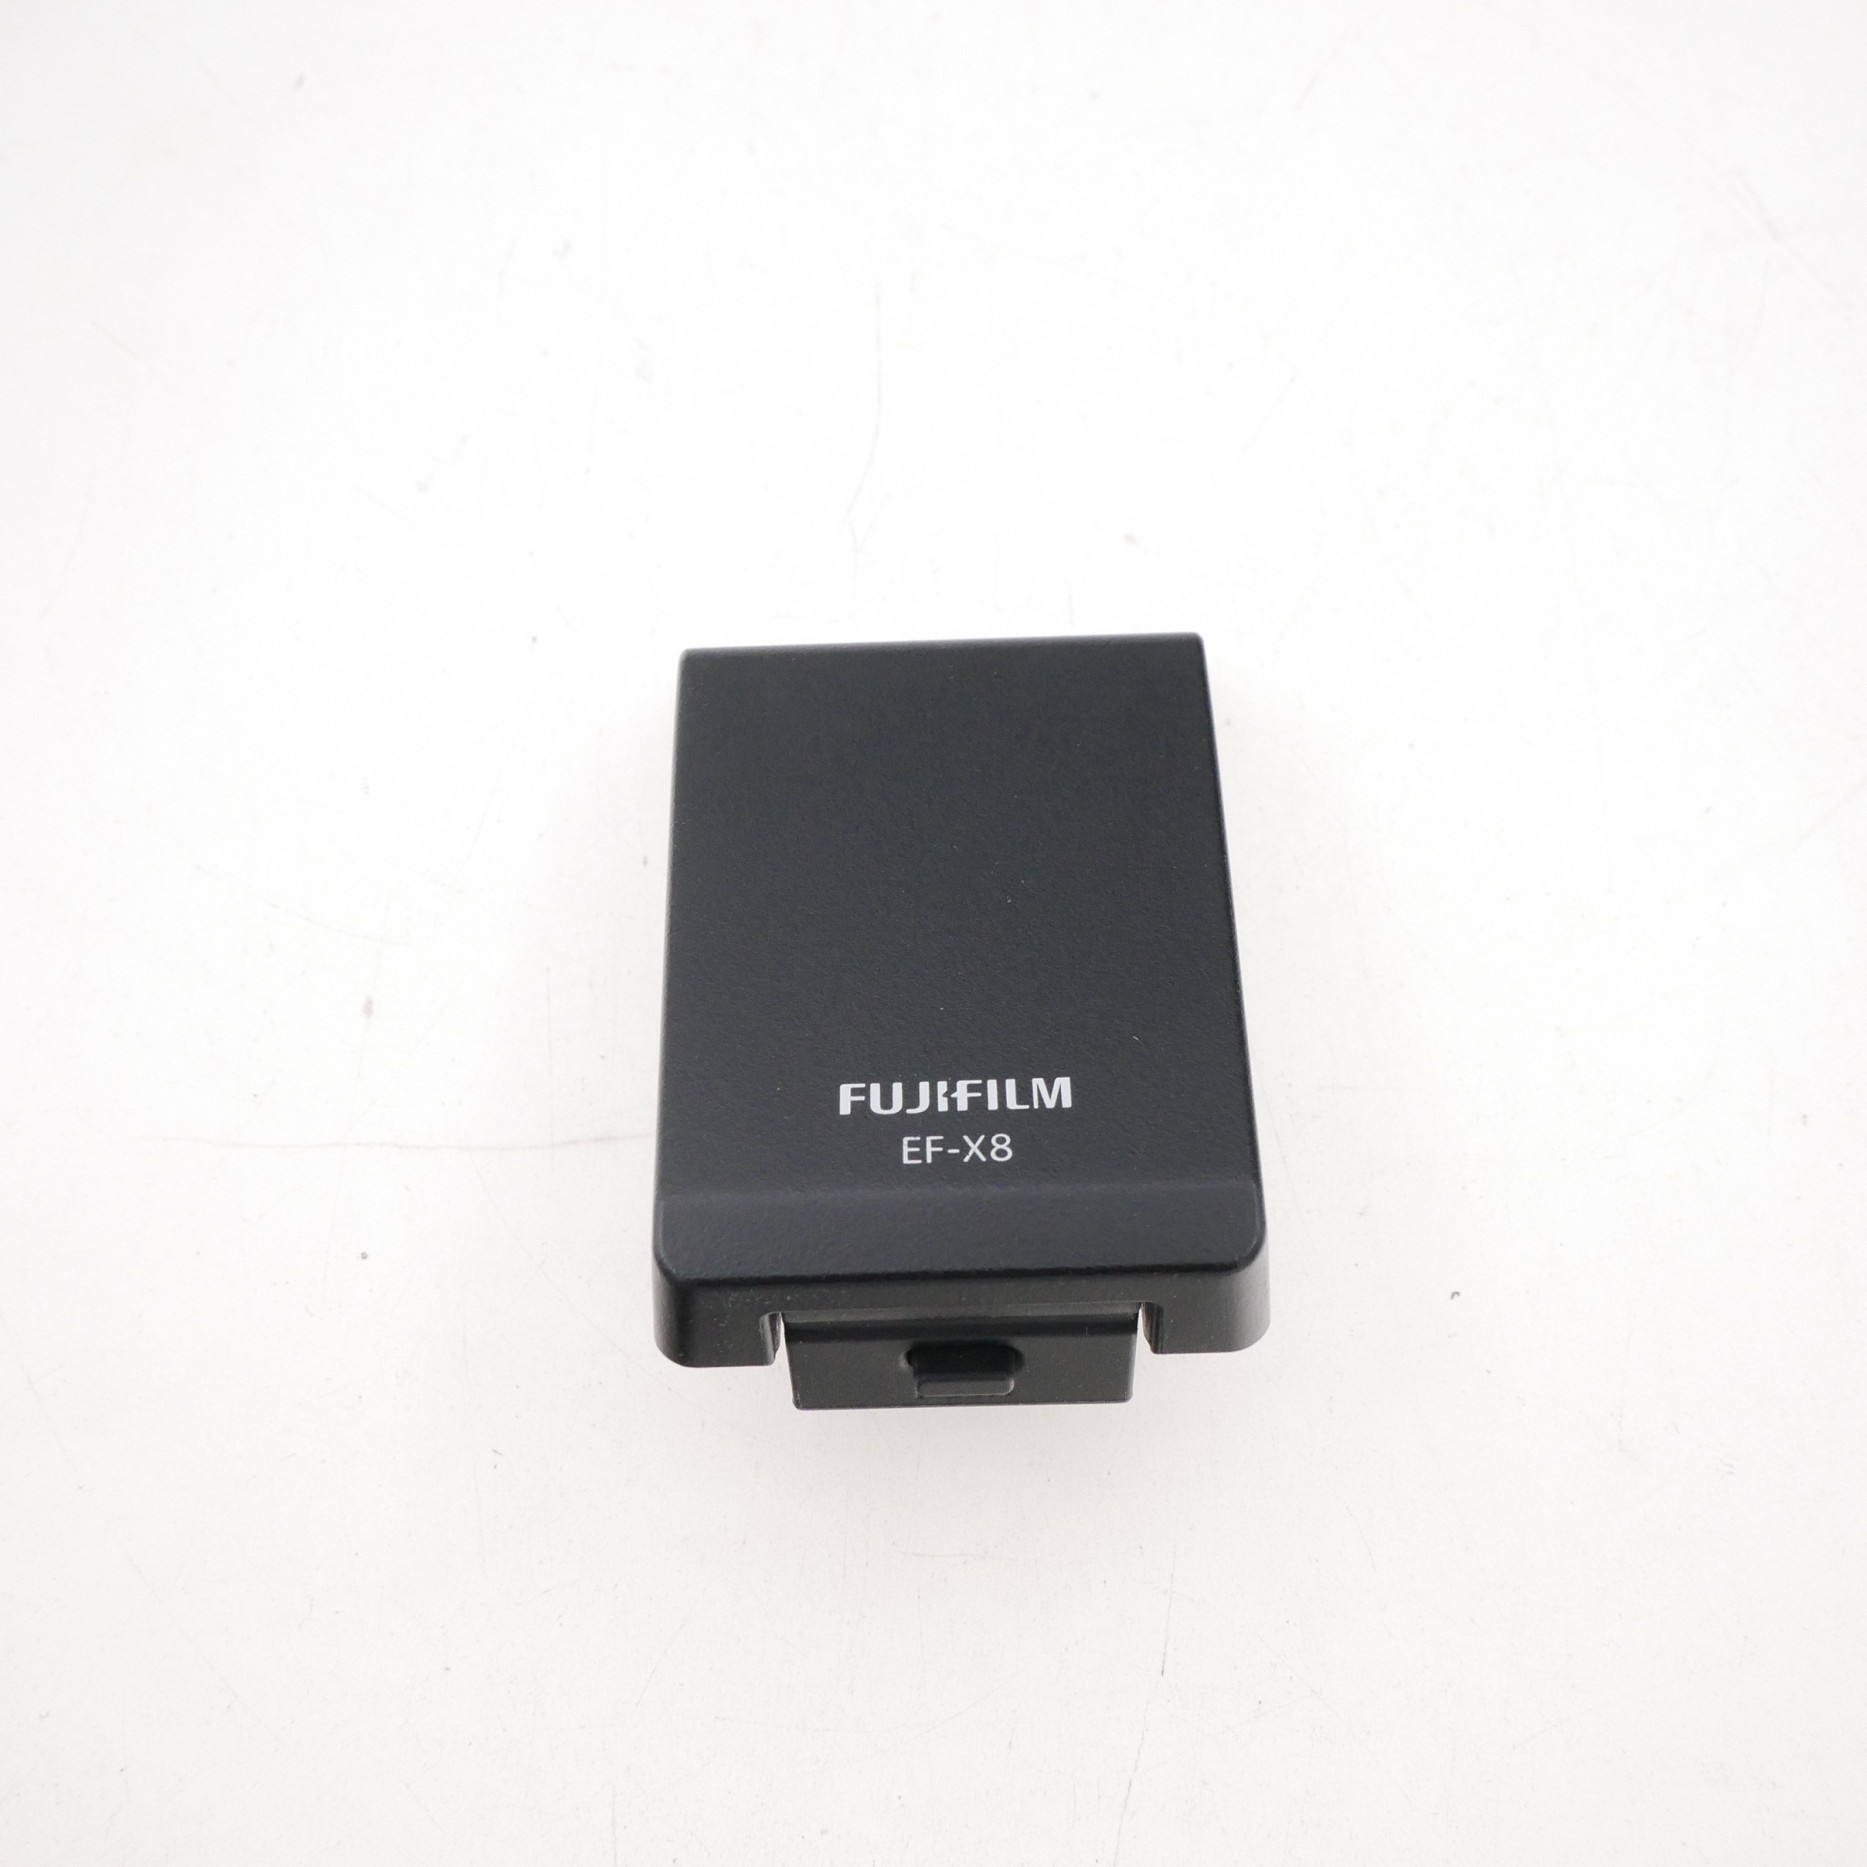 Fujifilm EF-X8 Flash